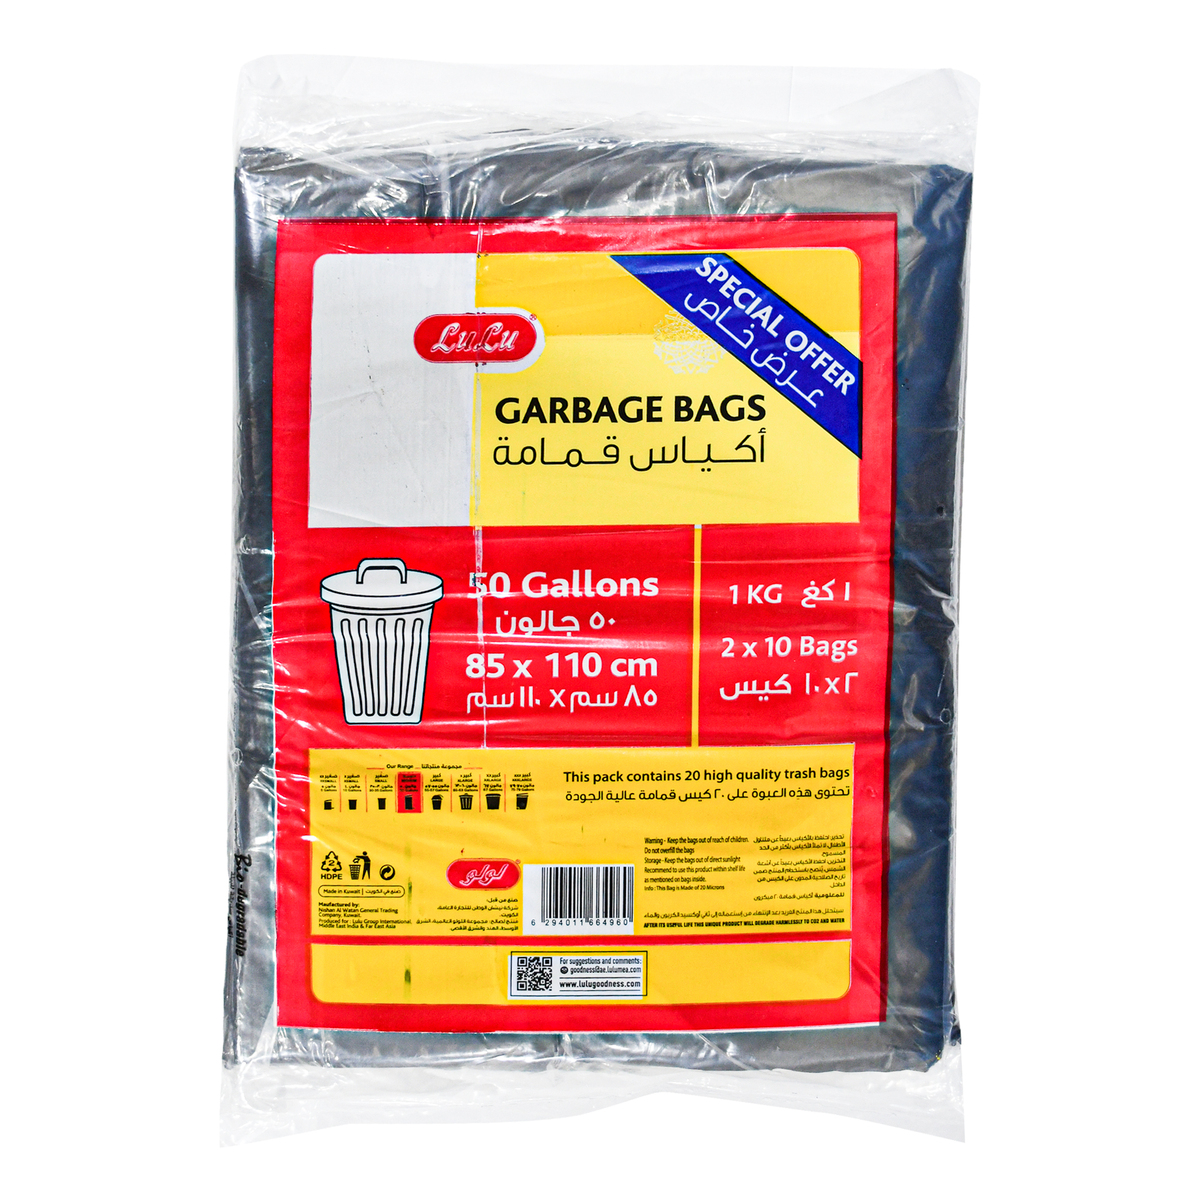 اشتري قم بشراء LuLu Garbage Bags 50 Gallons Size 85cm x 110cm 2 x 10 pcs Online at Best Price من الموقع - من لولو هايبر ماركت LULU WORLD FOOD في الكويت